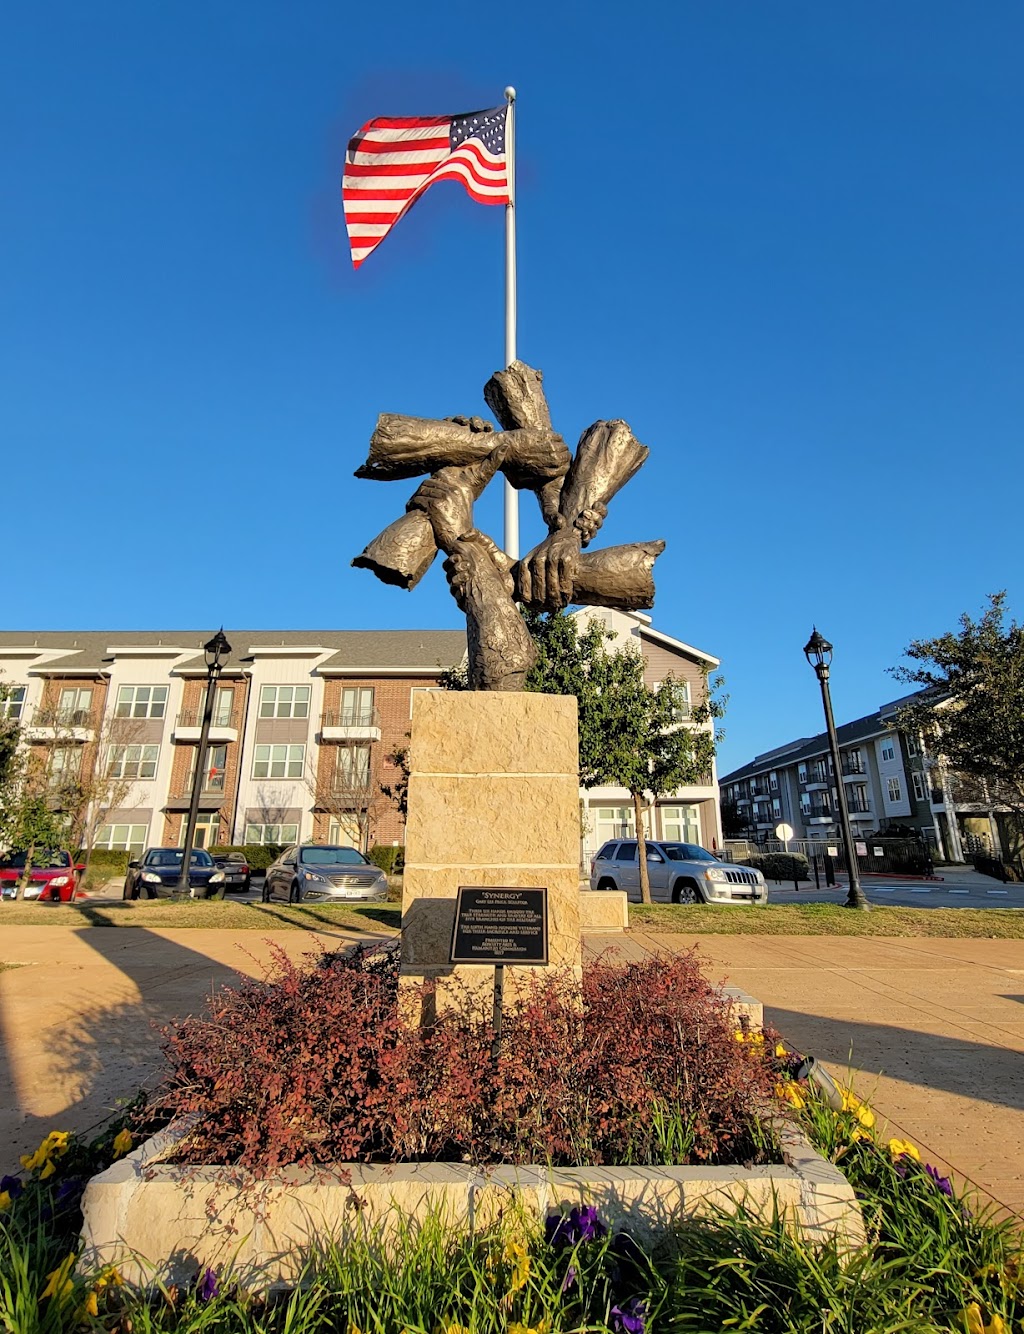 Veterans Park | 3900 Main St, Rowlett, TX 75088, USA | Phone: (972) 412-6145